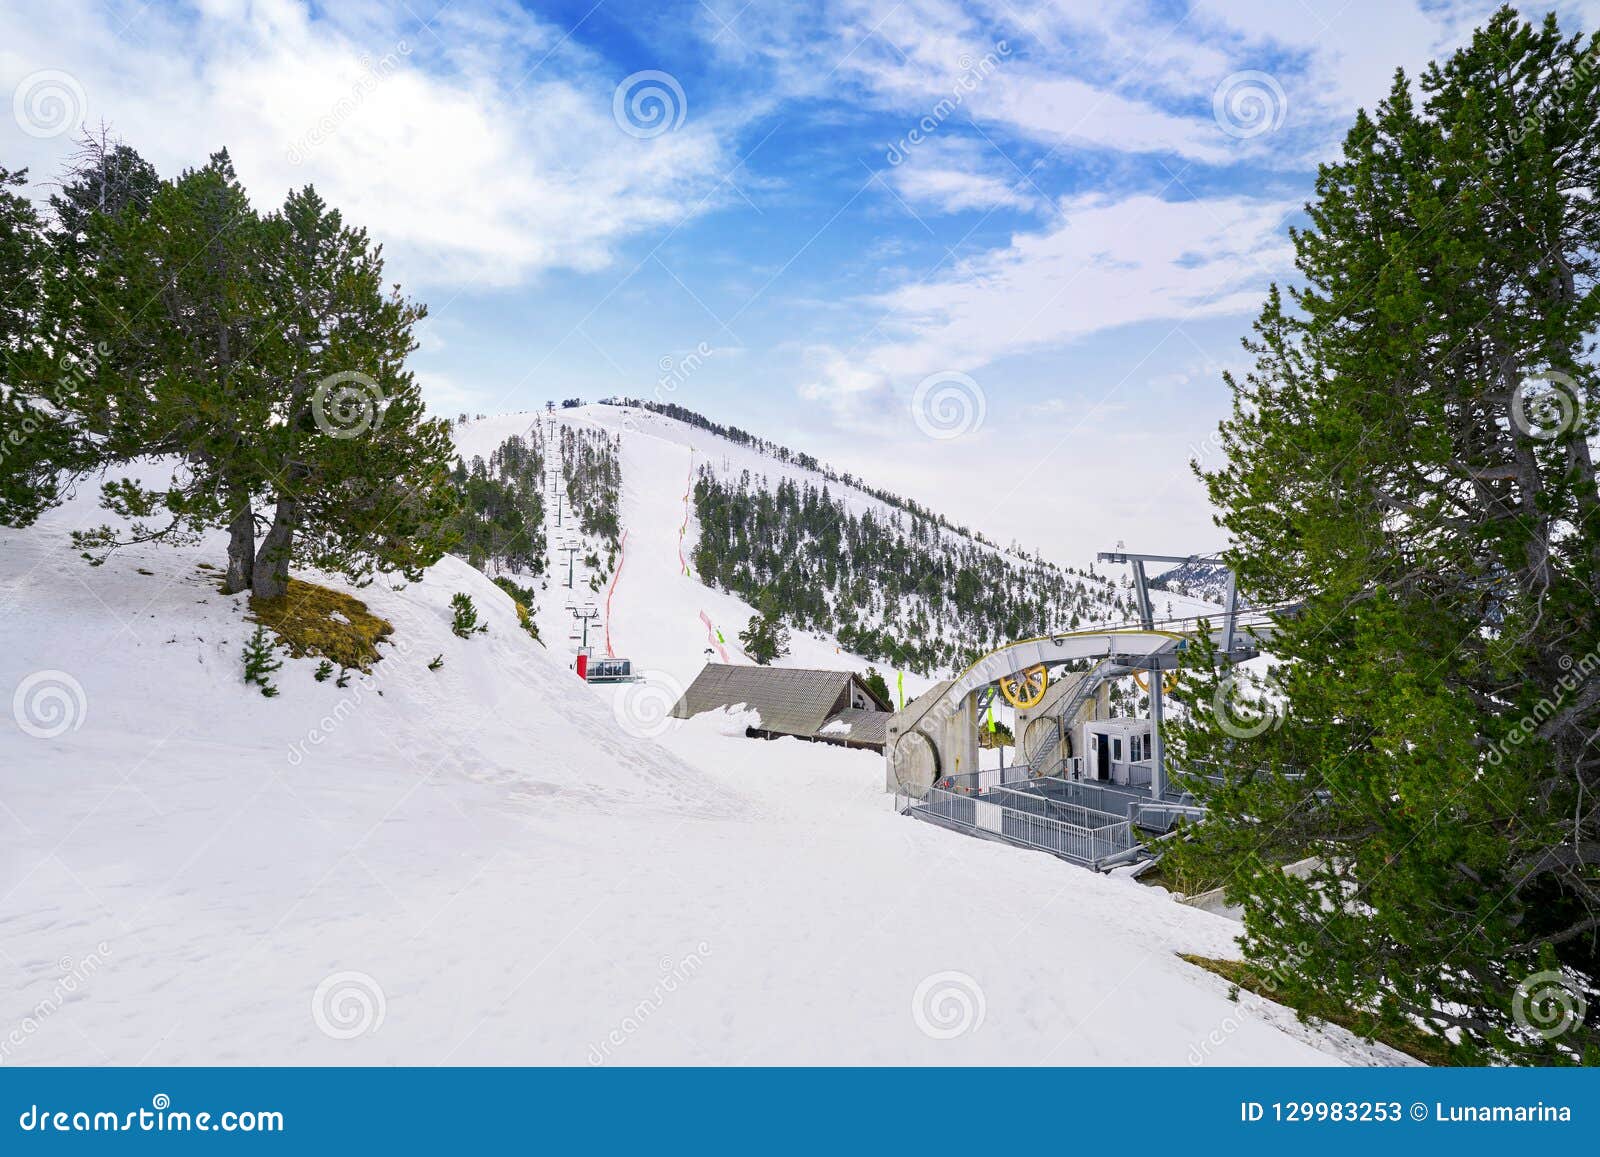 pal ski resort in andorra pyrenees